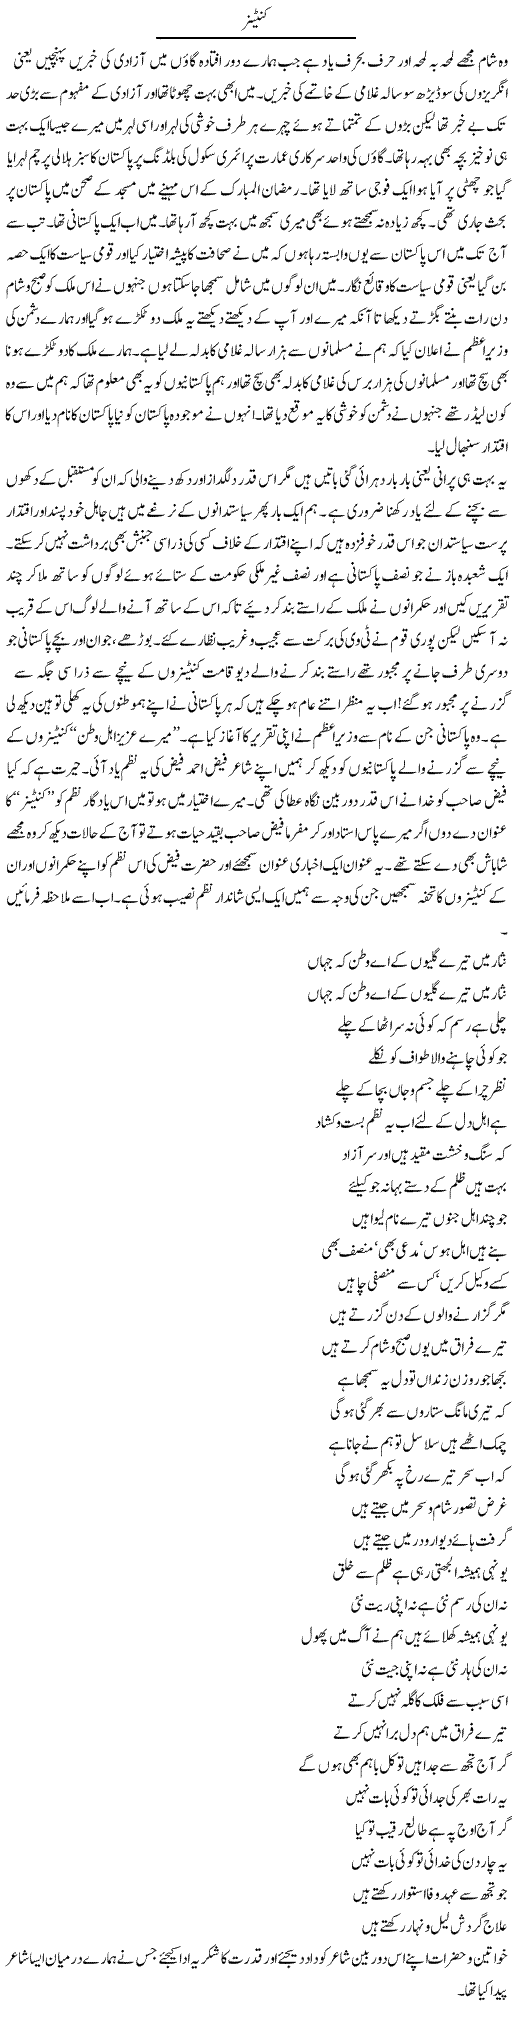 Container | Abdul Qadir Hassan | Daily Urdu Columns